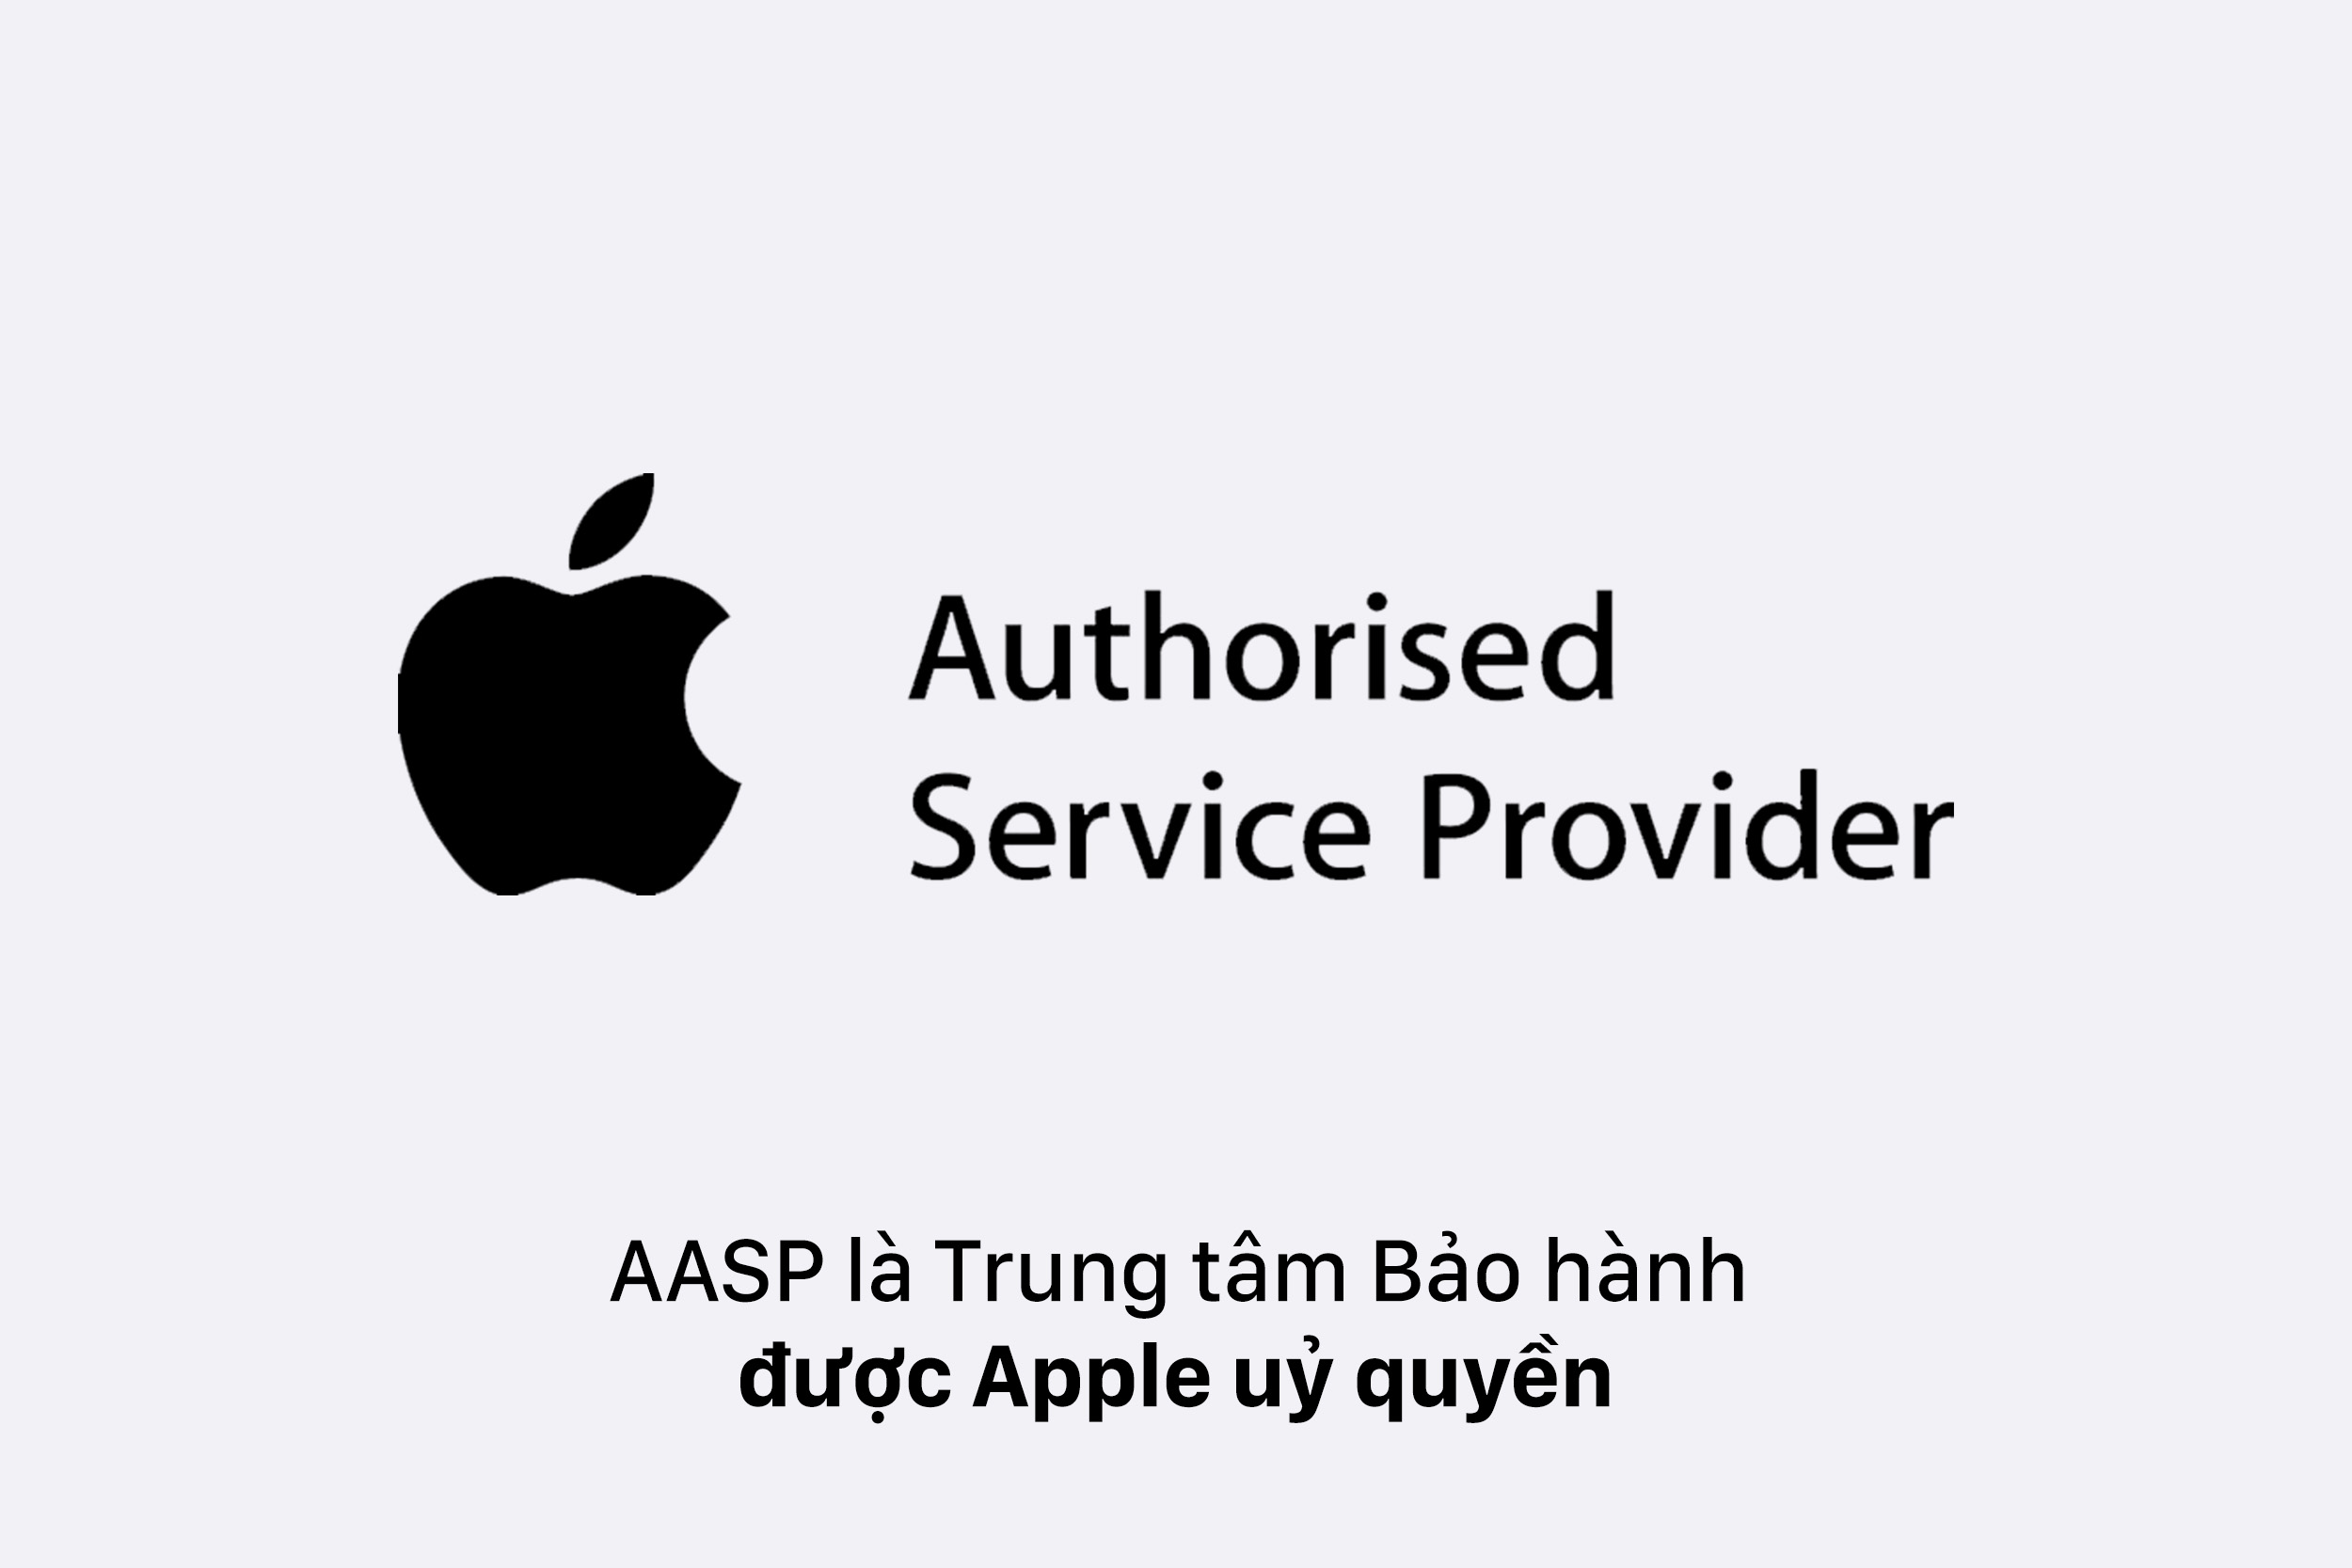 AASP là trung tâm bảo hành được Apple uỷ quyền